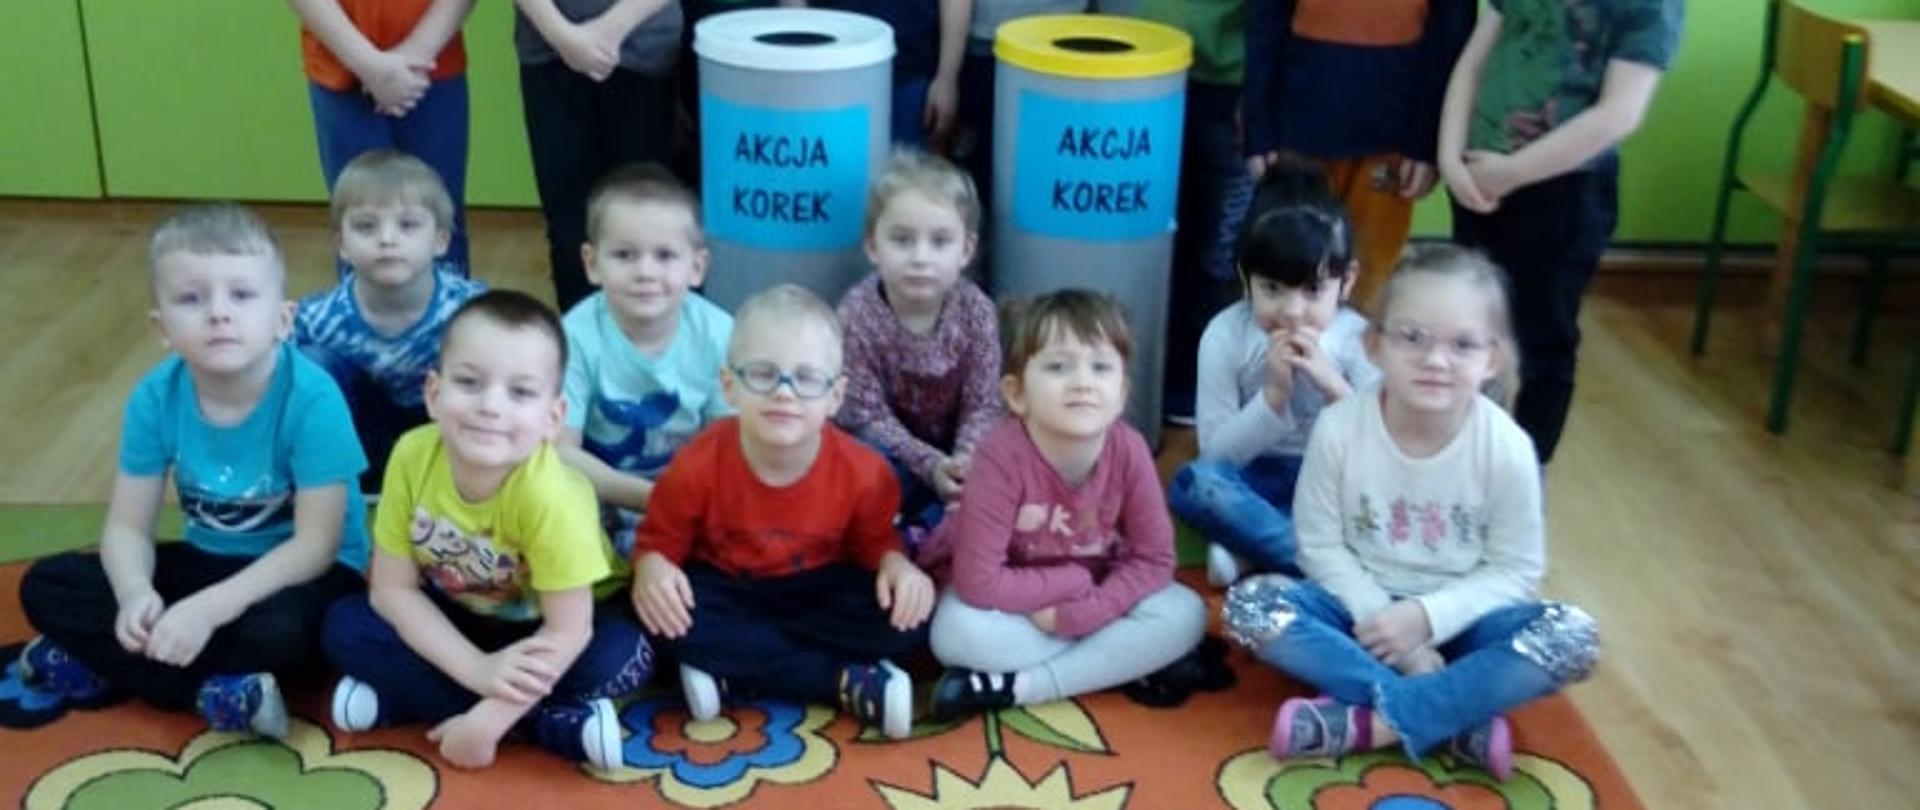 na zdjęciu widać dzieci biorące udział w charytatywnej akcji 